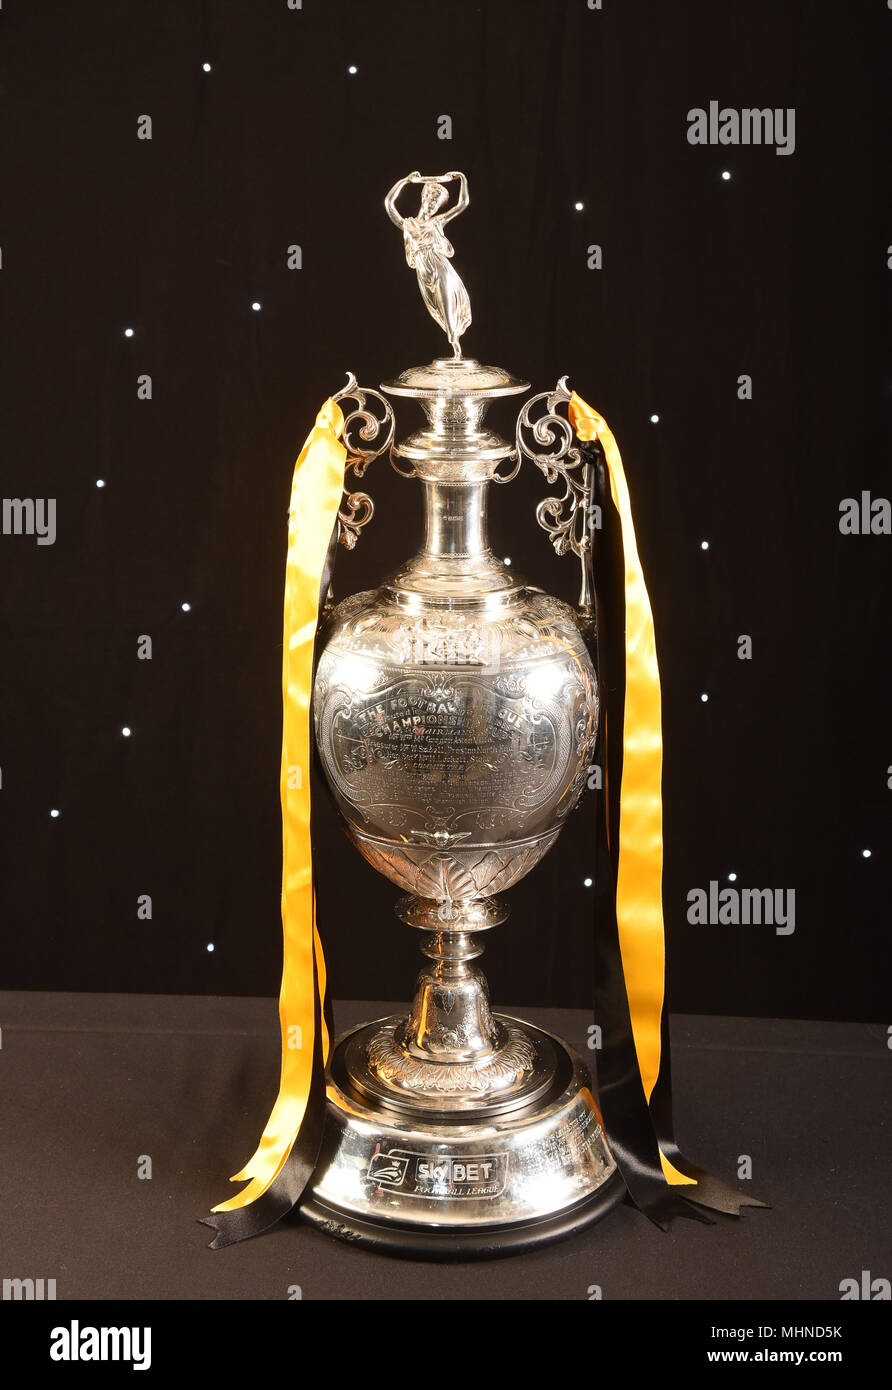 El trofeo del campeonato de la Liga de Fútbol inglesa que ahora se presentan a los ganadores del Campeonato apuesta Sky ganadores Foto de stock